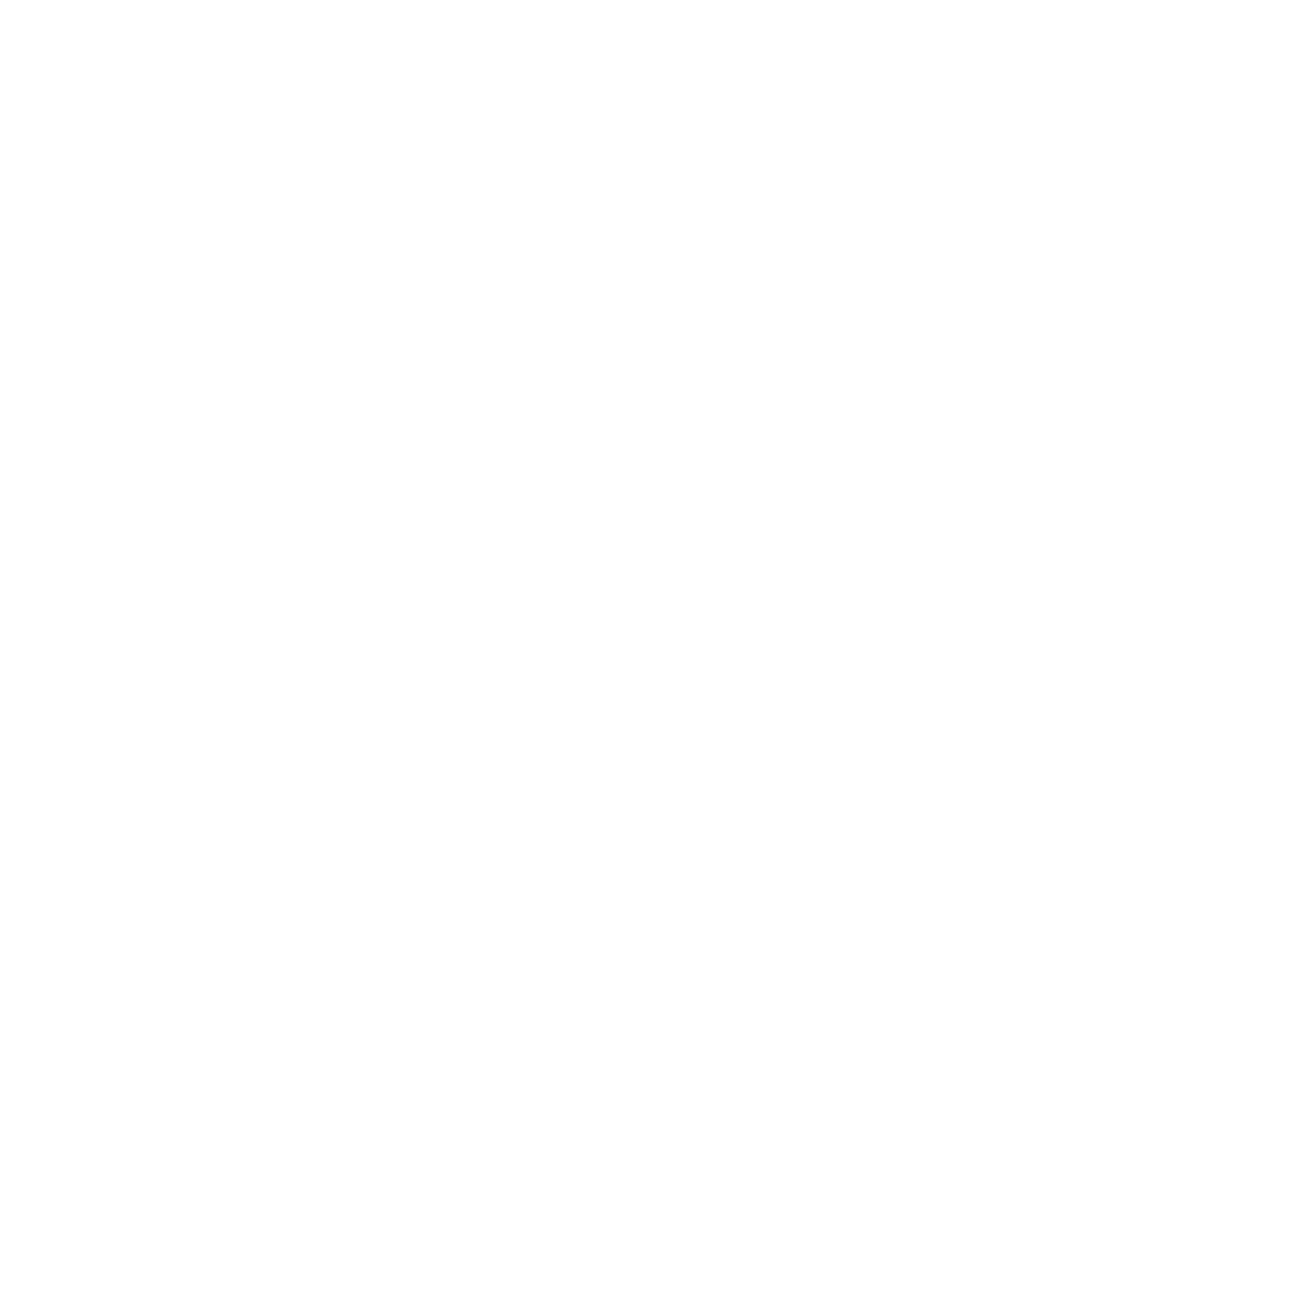 Masjid Pogung Dalangan